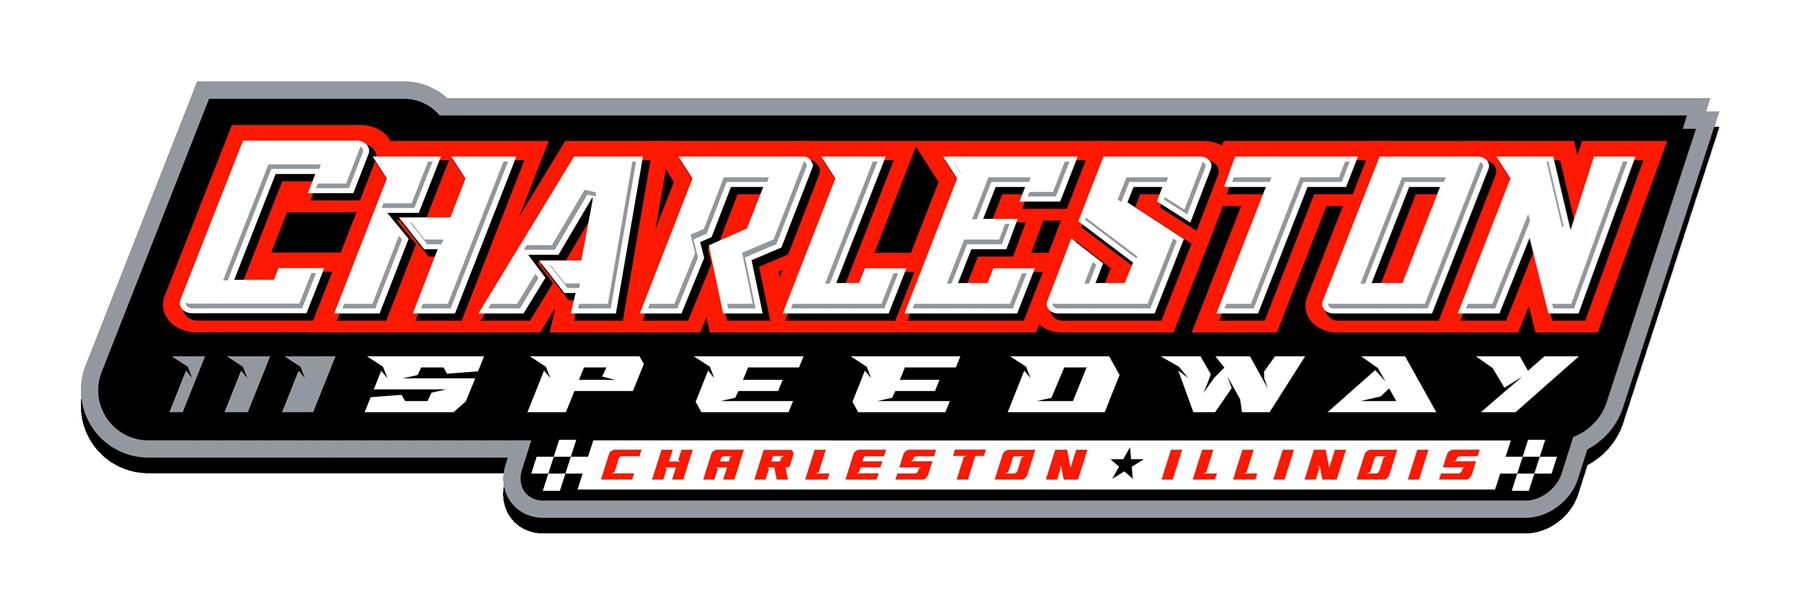 8/19/2022 - Charleston Speedway